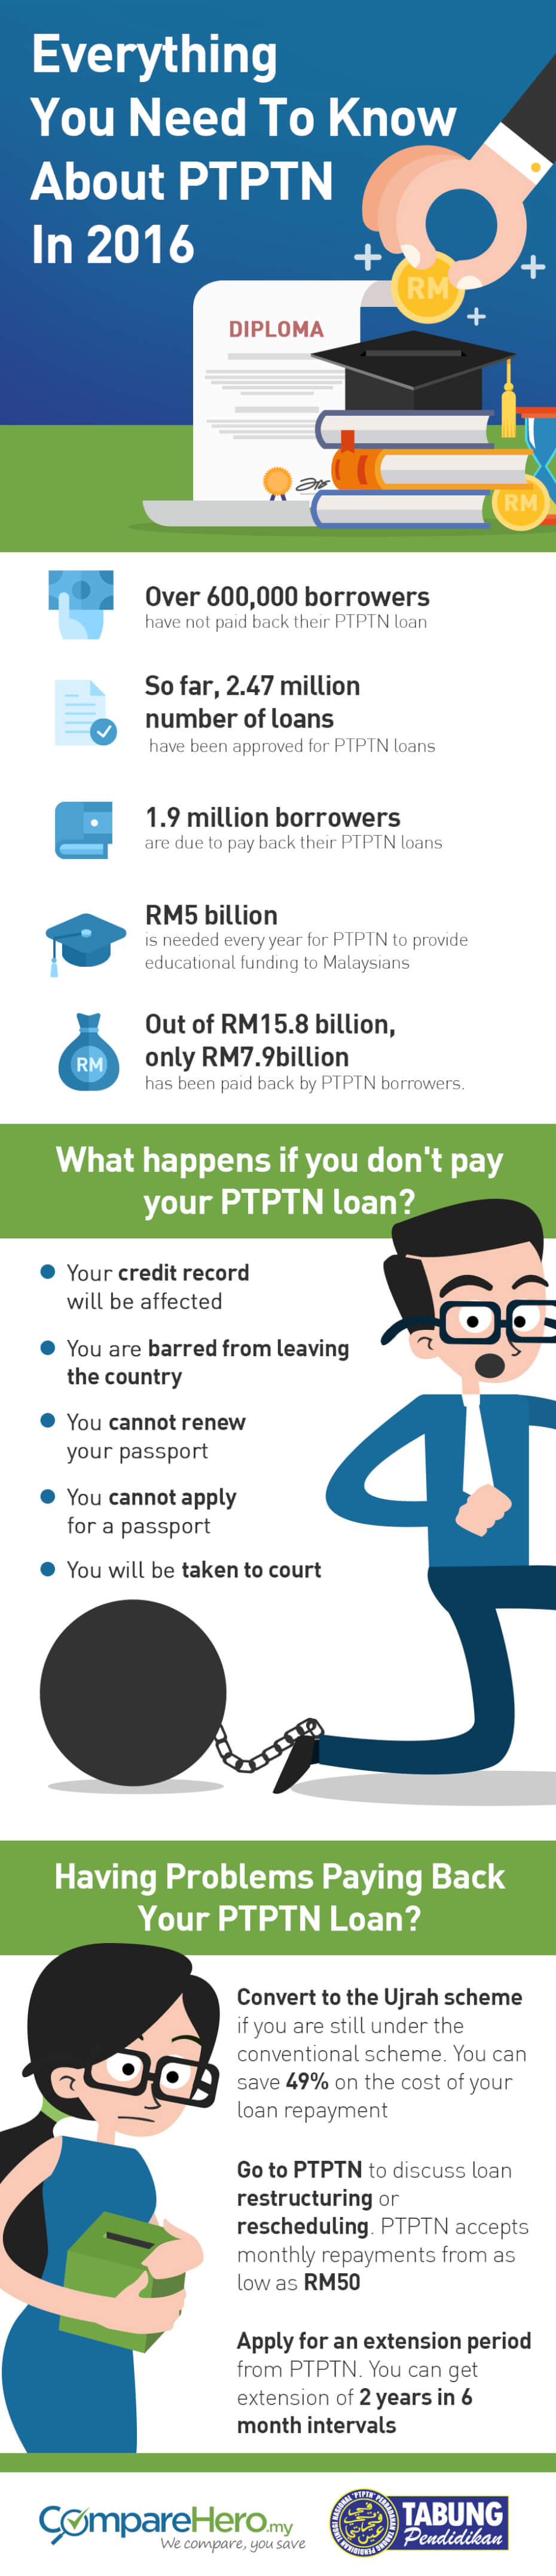 What Happens When You Don't Pay Your PTPTN loan